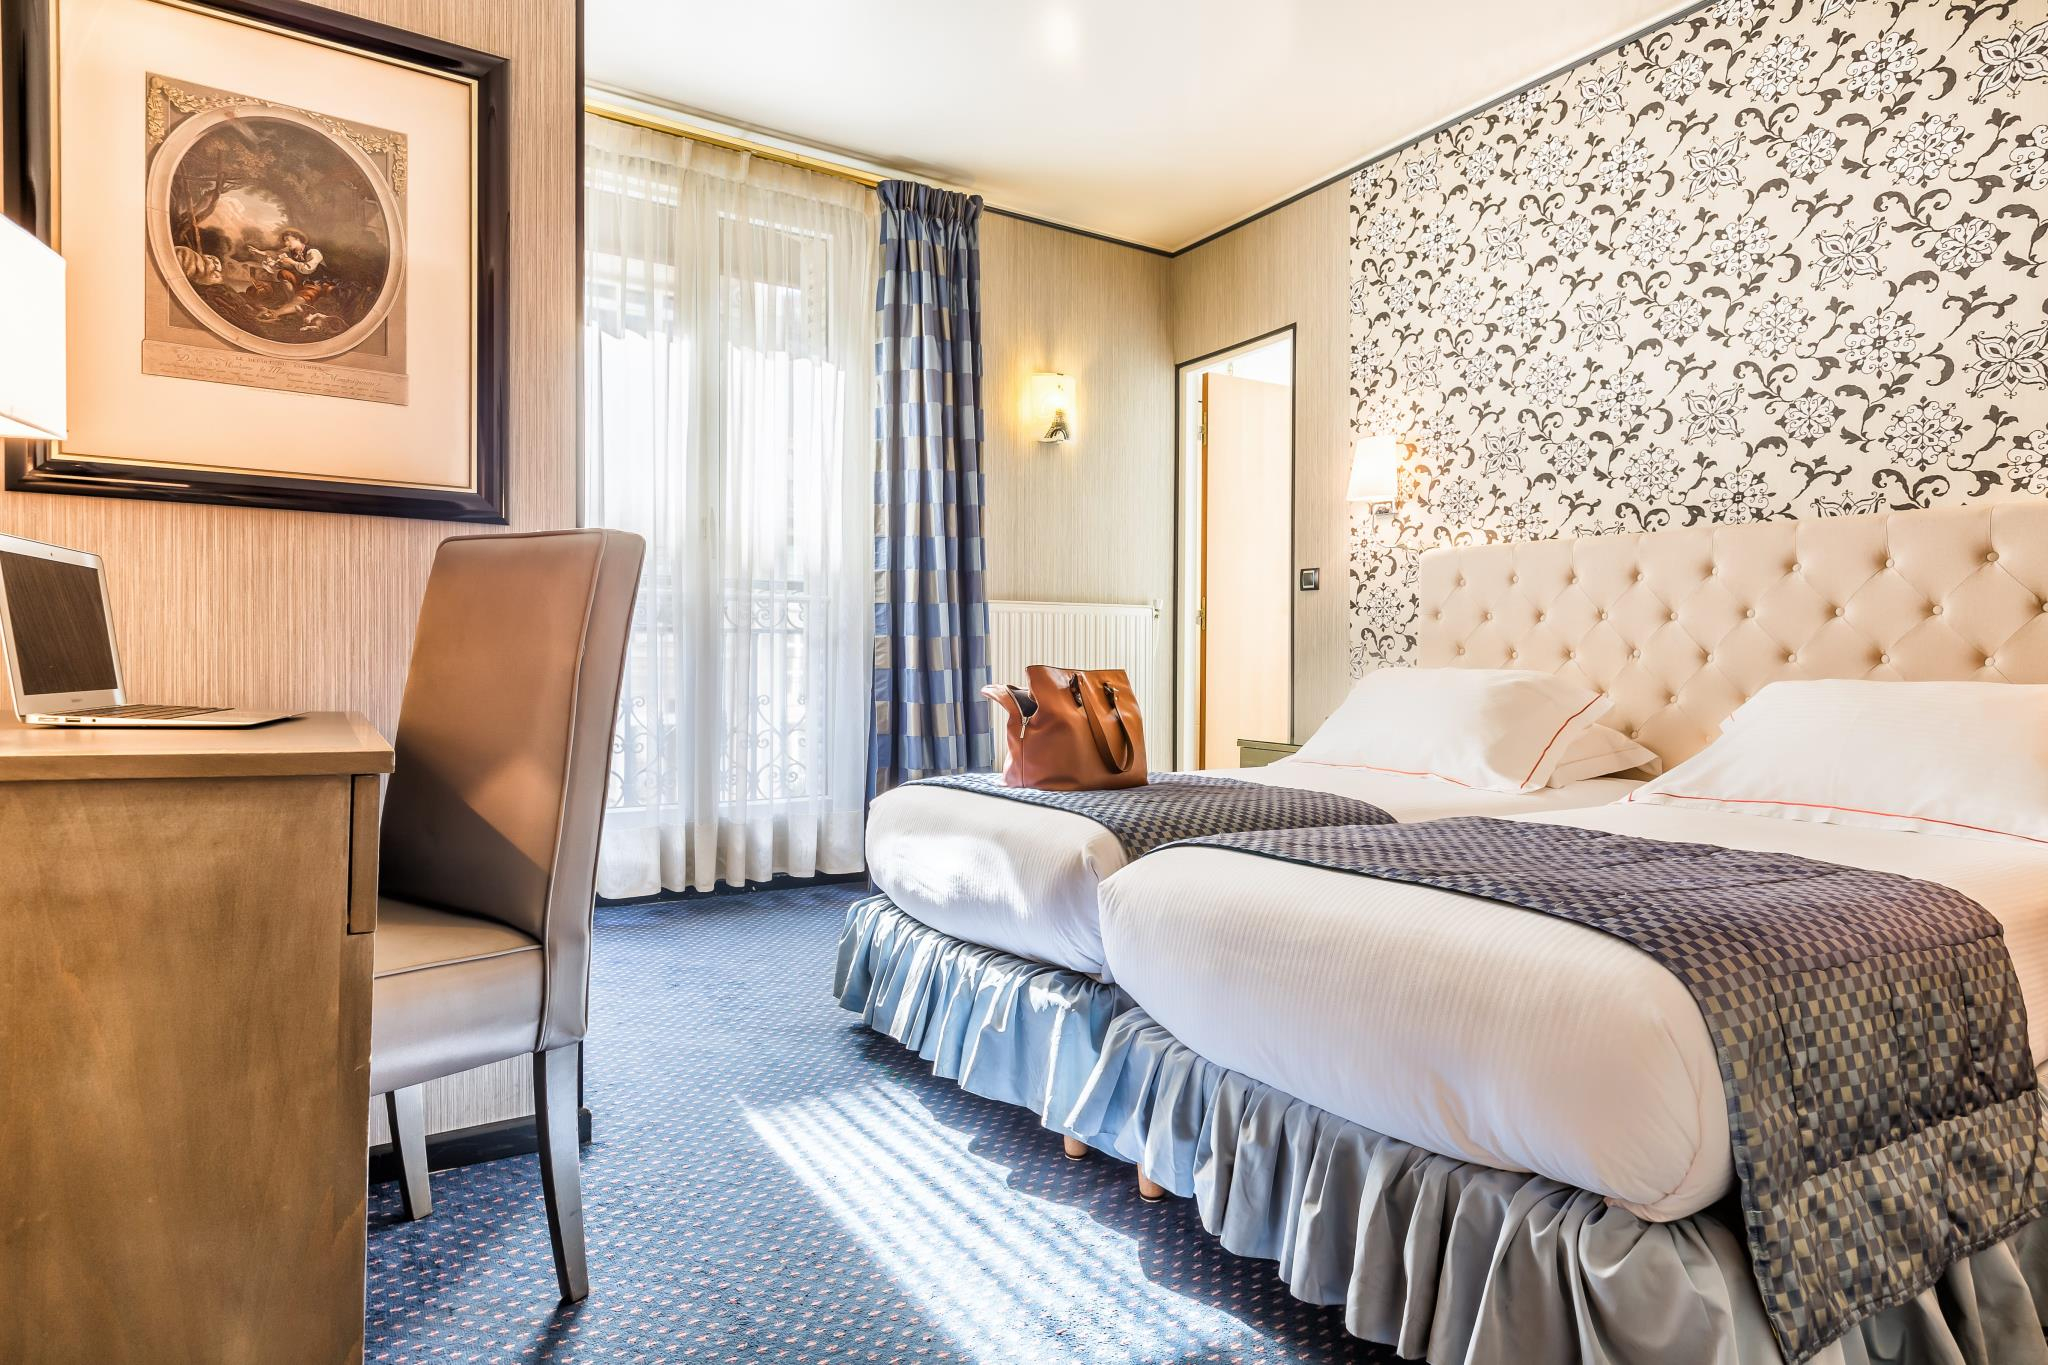 Le Regence Hotel In Paris - Room Deals, Photos &amp; Reviews concernant Salon De Jardin Discount